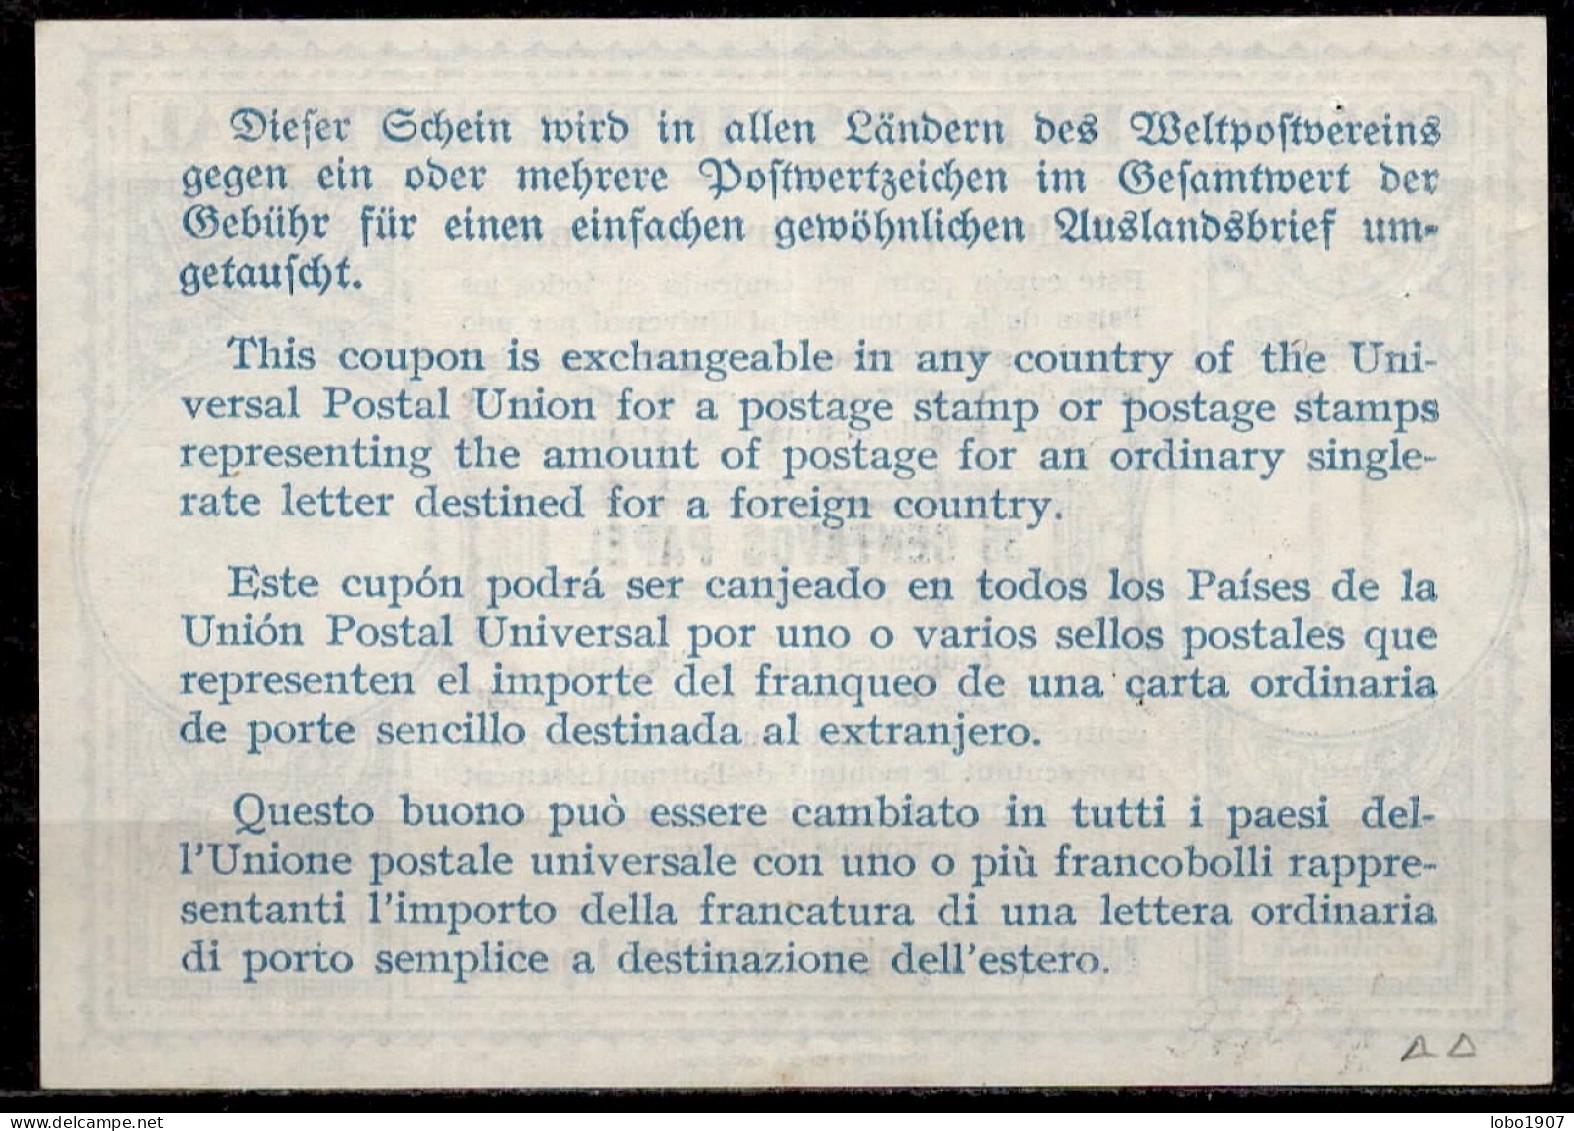 ARGENTINE ARGENTINA  1948, Lo14  35 CENTAVOS International Reply Coupon Reponse Antwortschein Vale Respuesta  IRC IAS O - Interi Postali